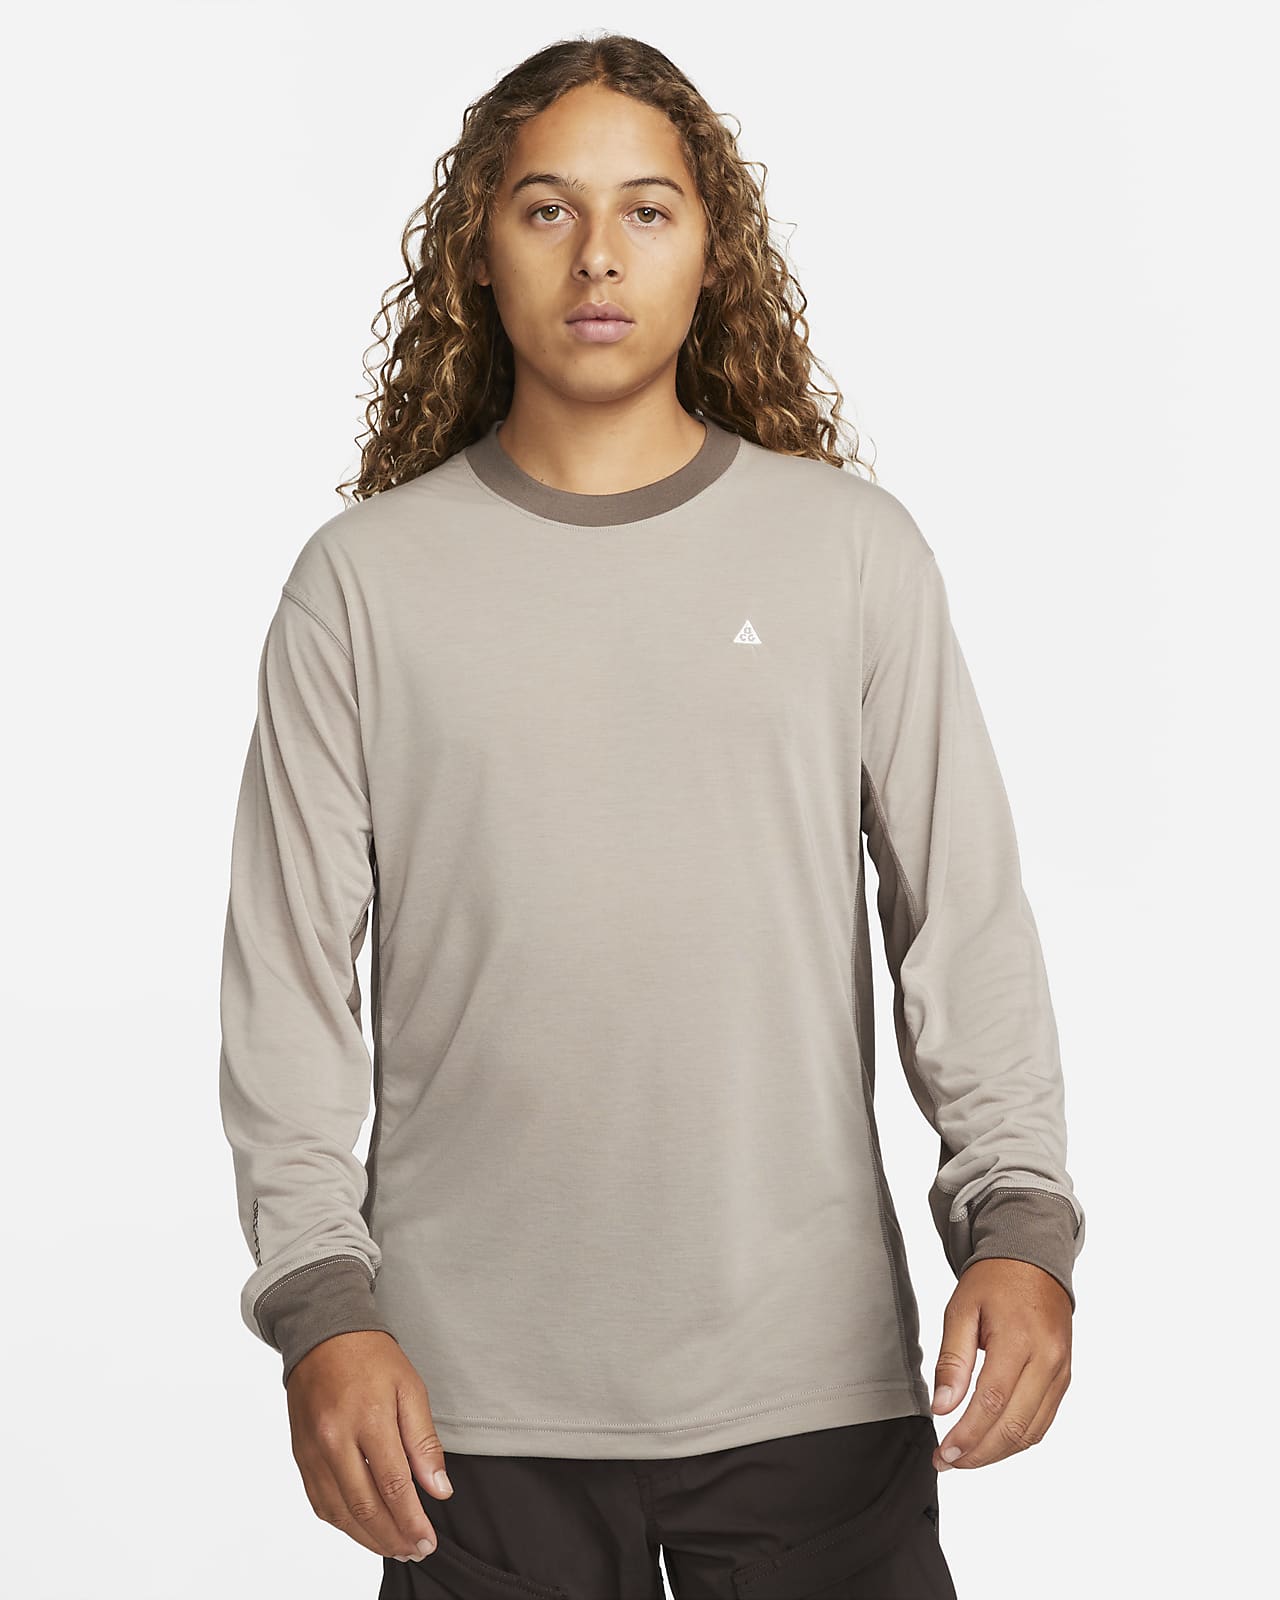 Ανδρική μακρυμάνικη μπλούζα Nike Dri-FIT ACG "Goat Rocks"